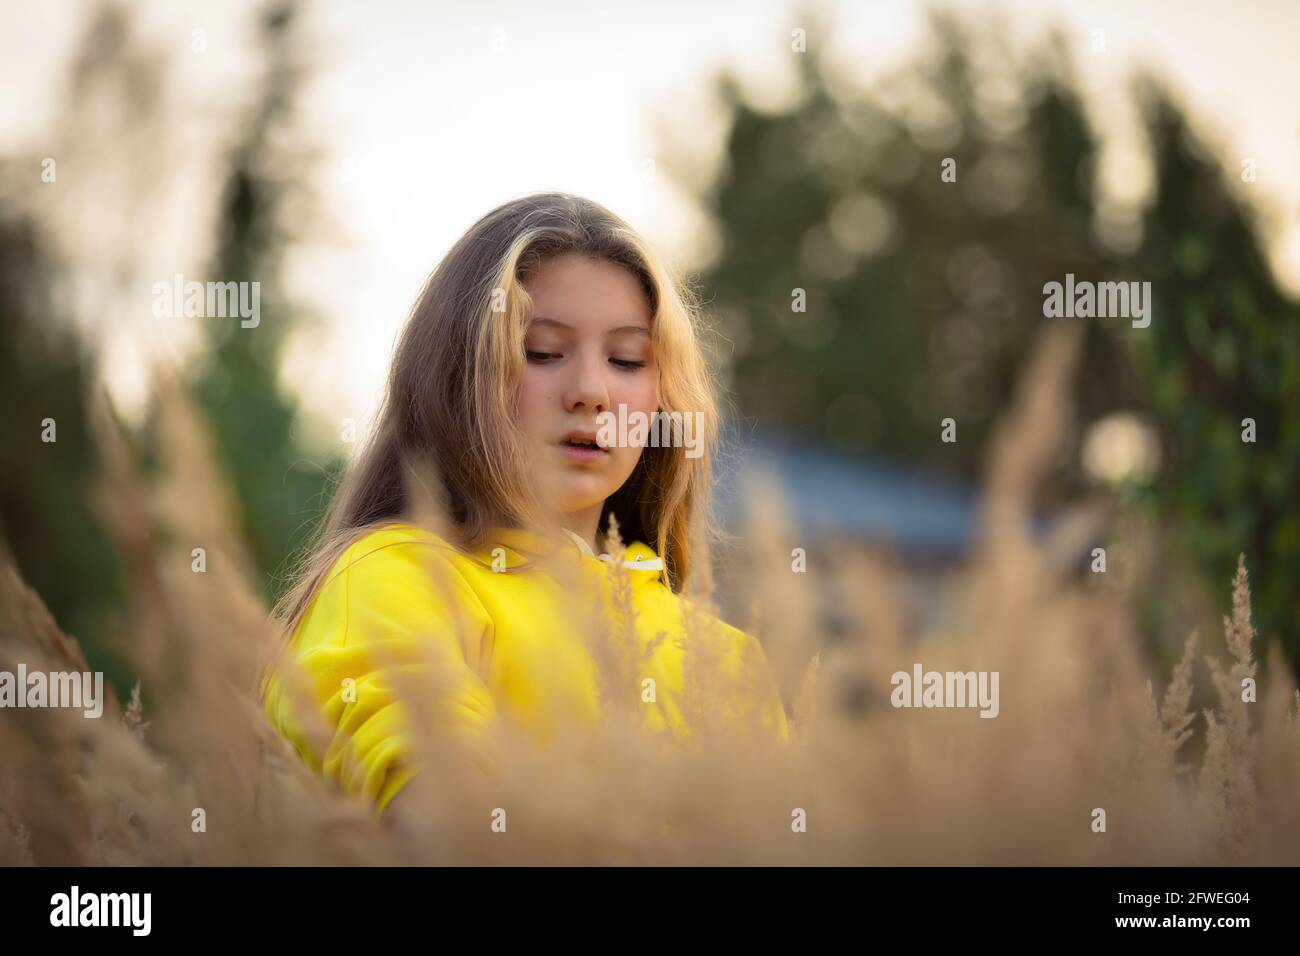 Ein junges Mädchen mit langen Haaren geht über ein Feld mit hohem Gras. Blonde Haare. Gelbe Jacke. Stockfoto